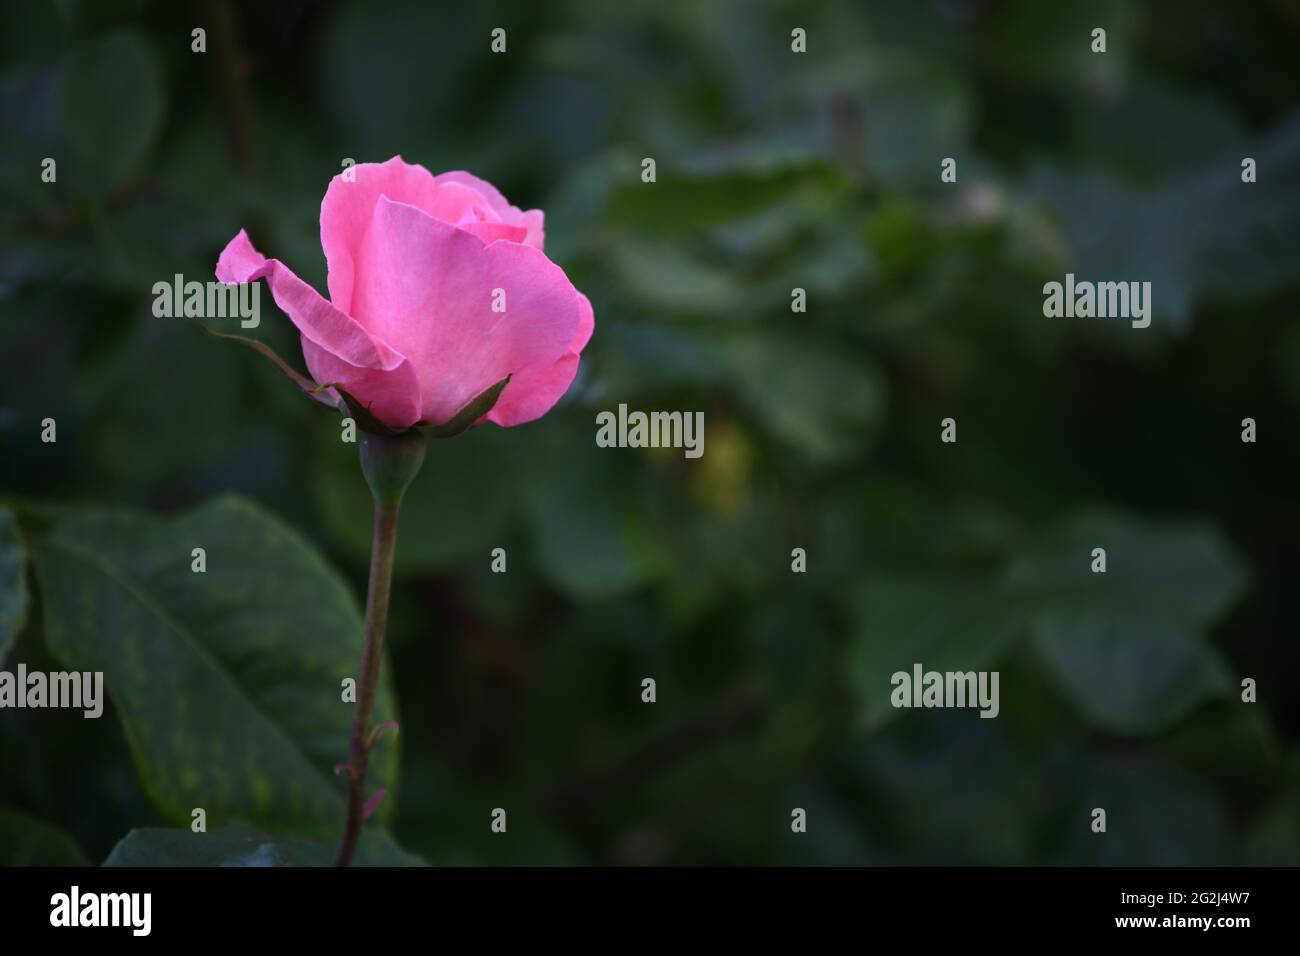 Heilpflanze Rose - rosa - mit herrlicher rosafarbener Rosenblüte als Zeichen der Liebe und Freundschaft Stock Photo